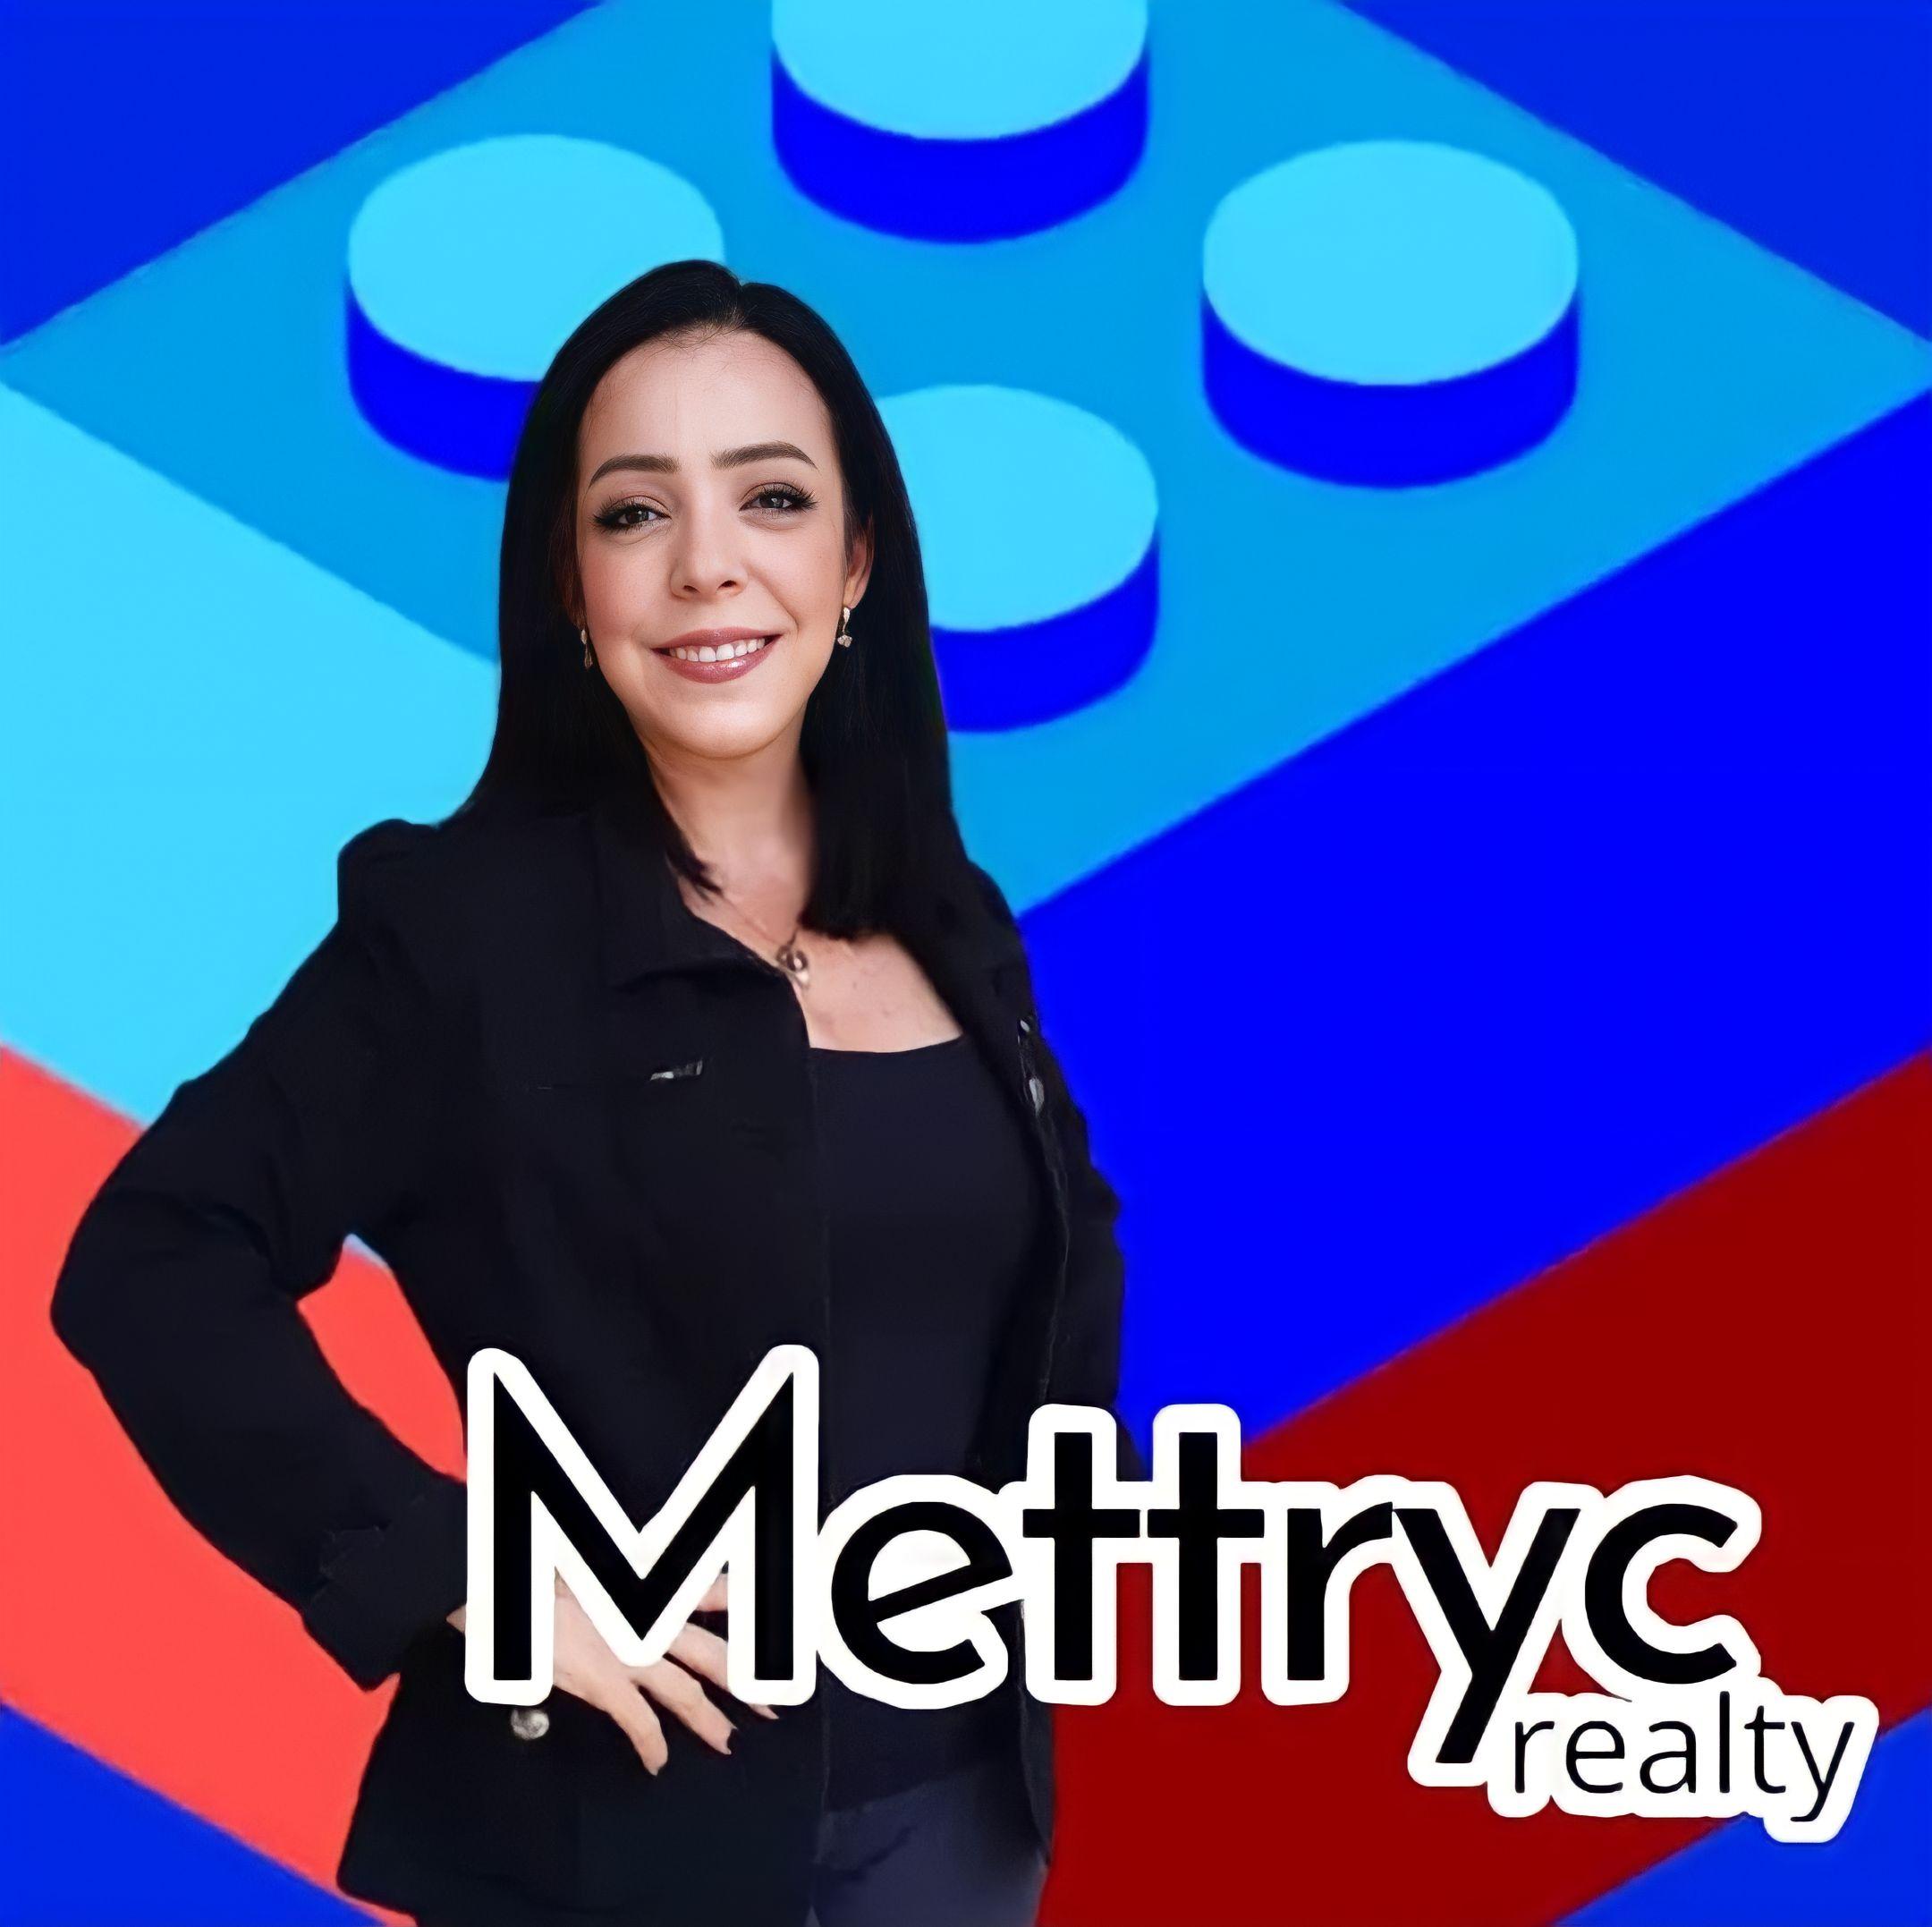 Maria Conchita Medina Mettryc Realty Inmobiliaria